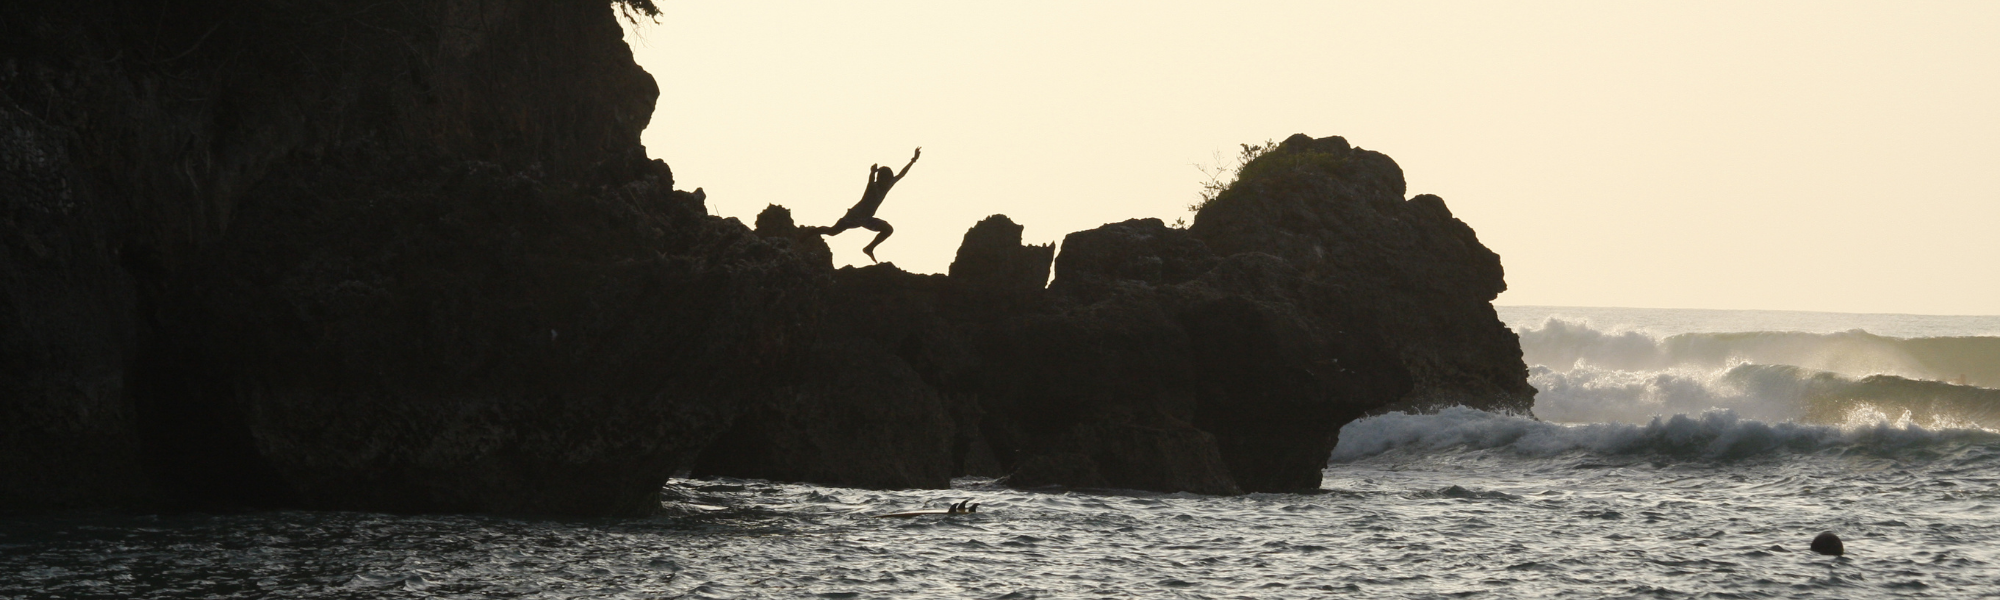 Taking Leaps and Choosing New Landings | James Webb